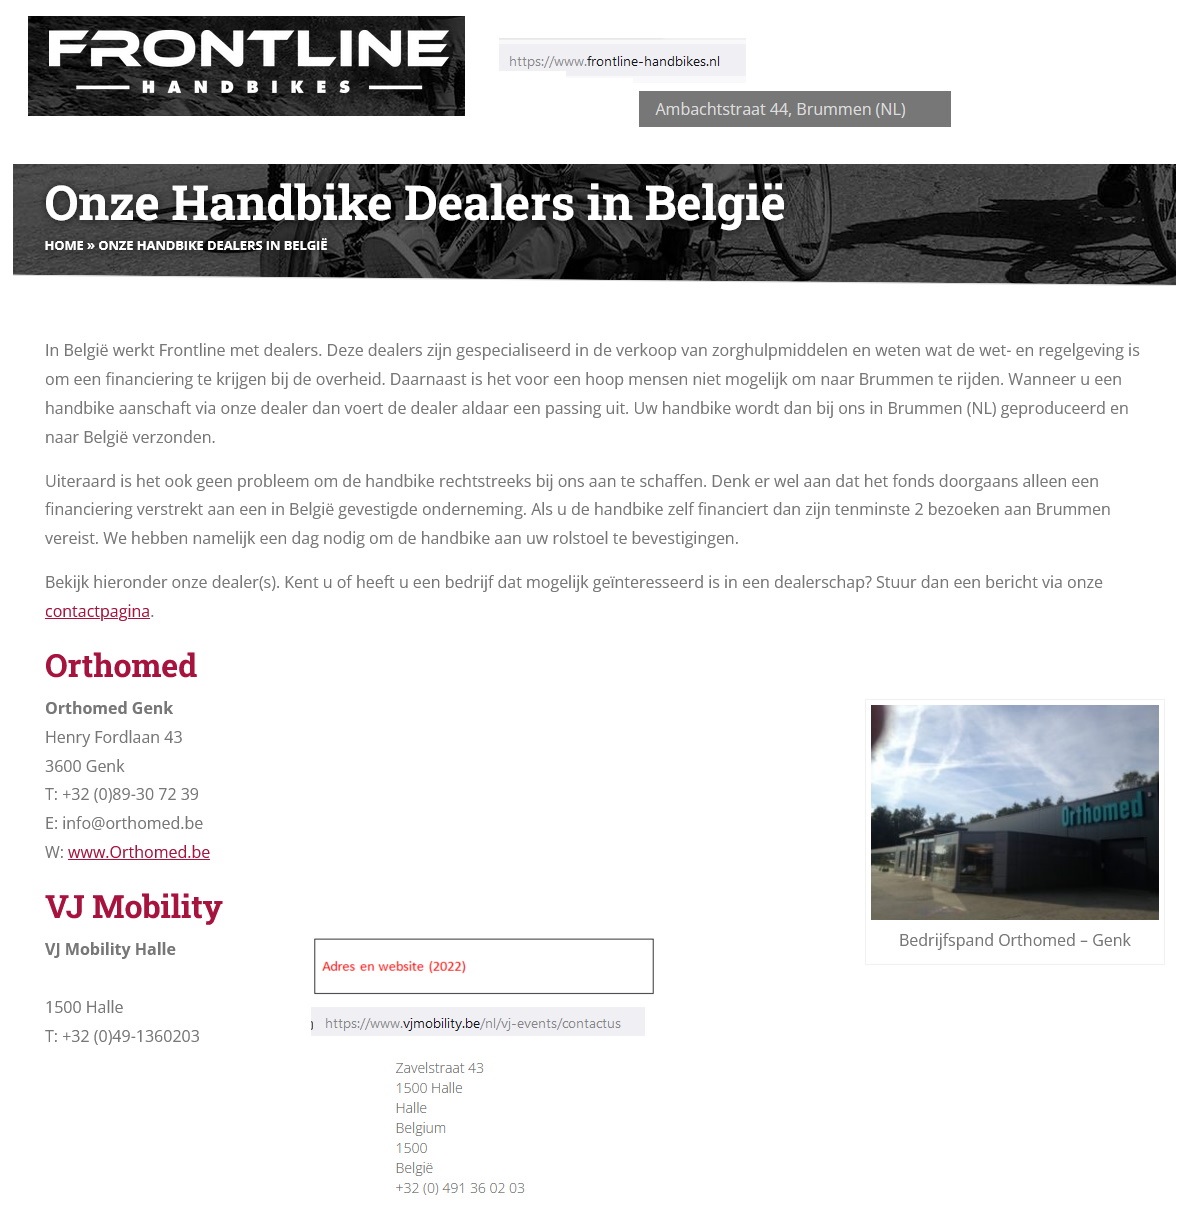 toegevoegd document 3 van Frontline 7-Speed Handbike  